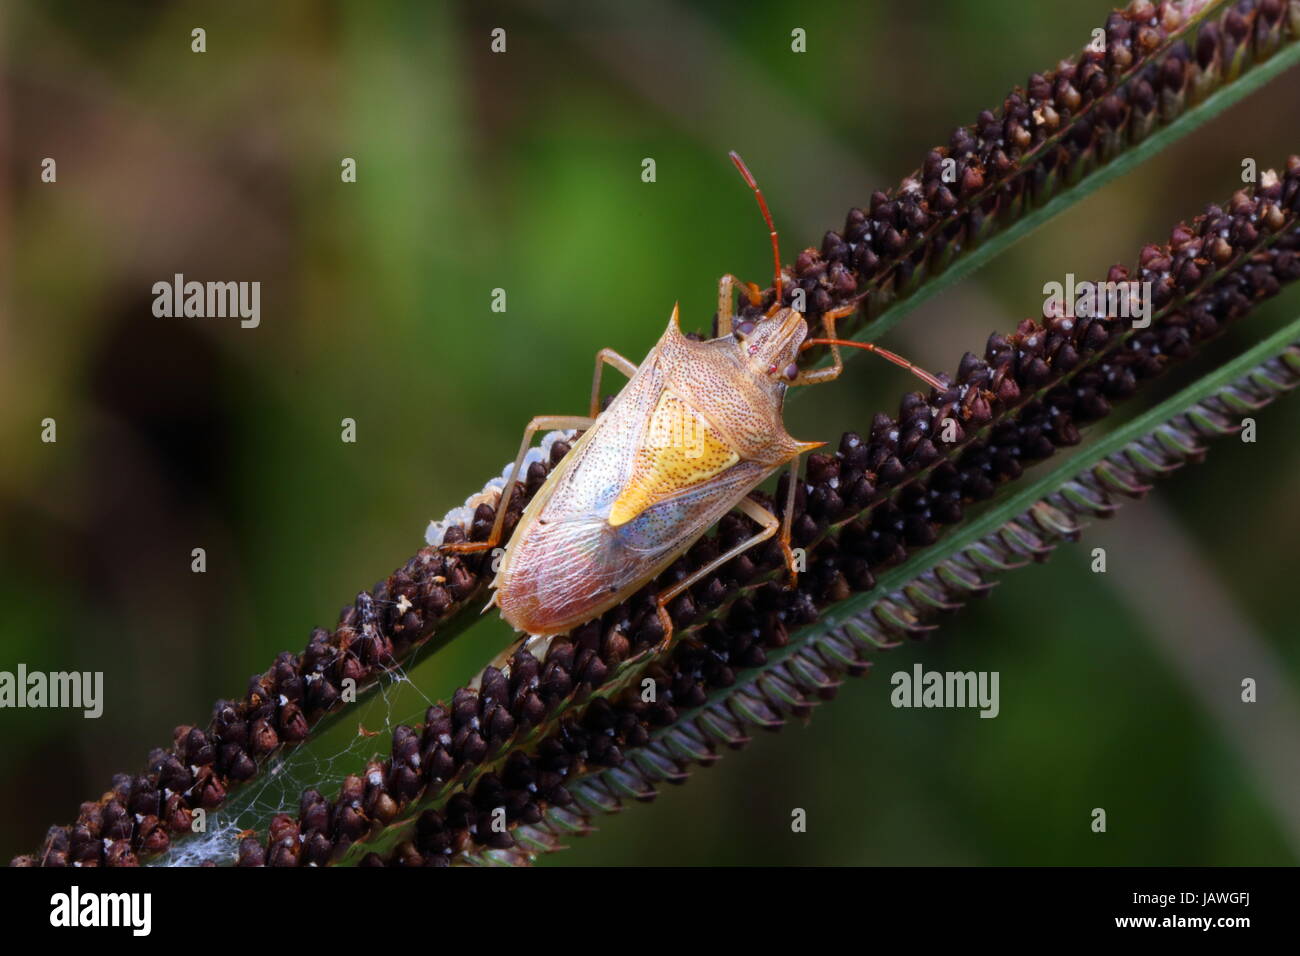 A stink bug, Oebalus pugnax, rampant sur un plant stalk. Banque D'Images